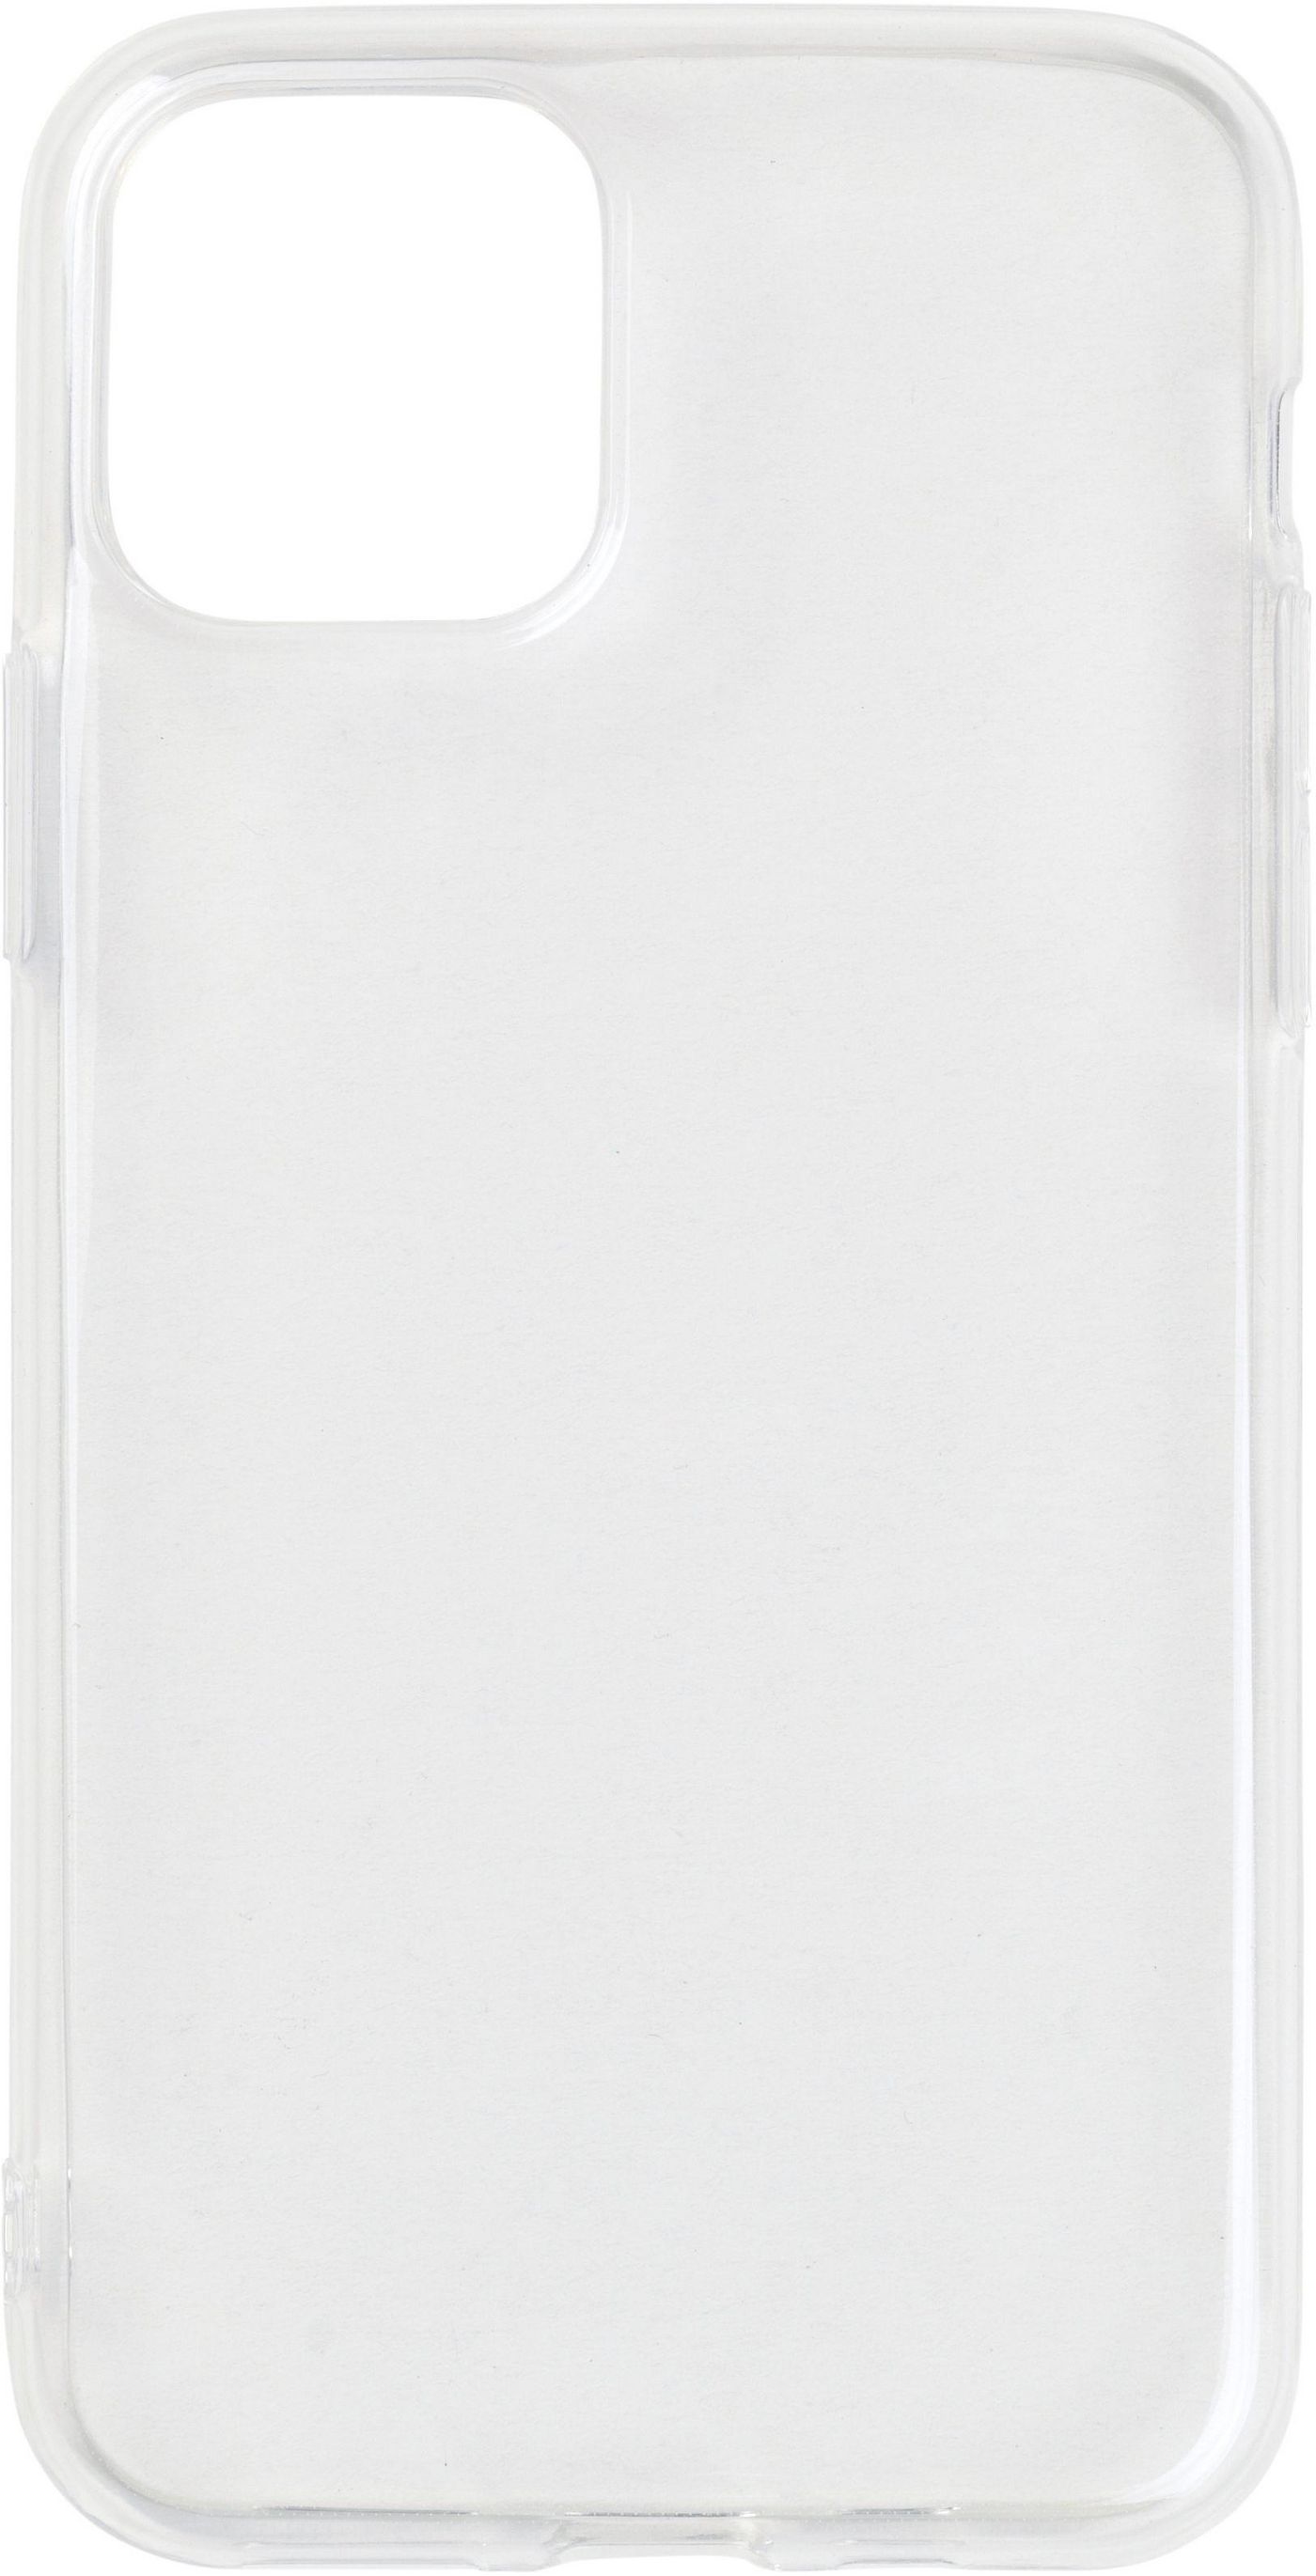 iPhone 11 Pro Soft Case (2019) Clear Ultra-slim